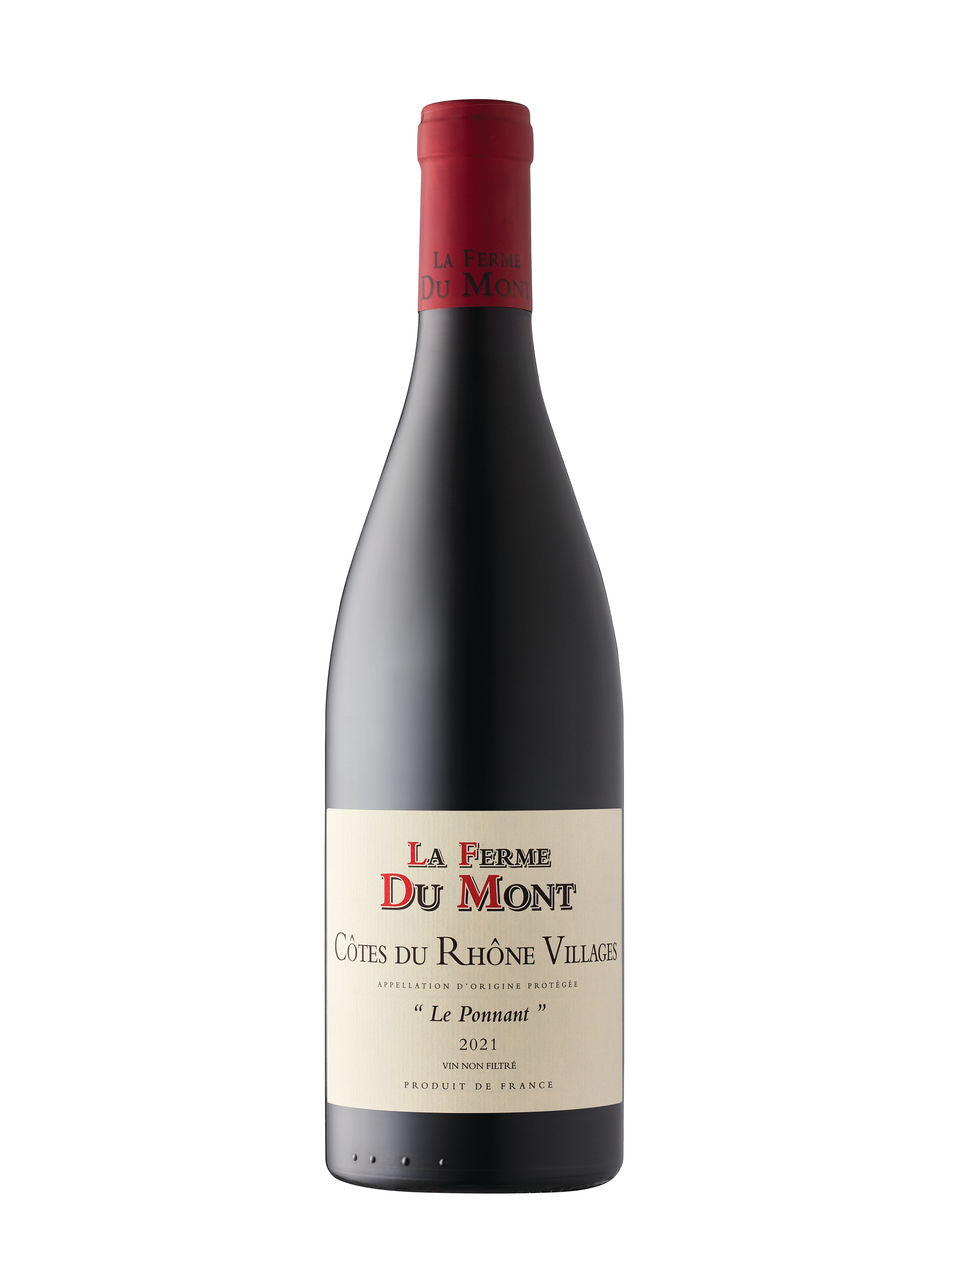 La Ferme du Mont Le Ponnant Côtes du Rhône-Villages 2021 Grenache Blend  750 ml bottle  VINTAGES